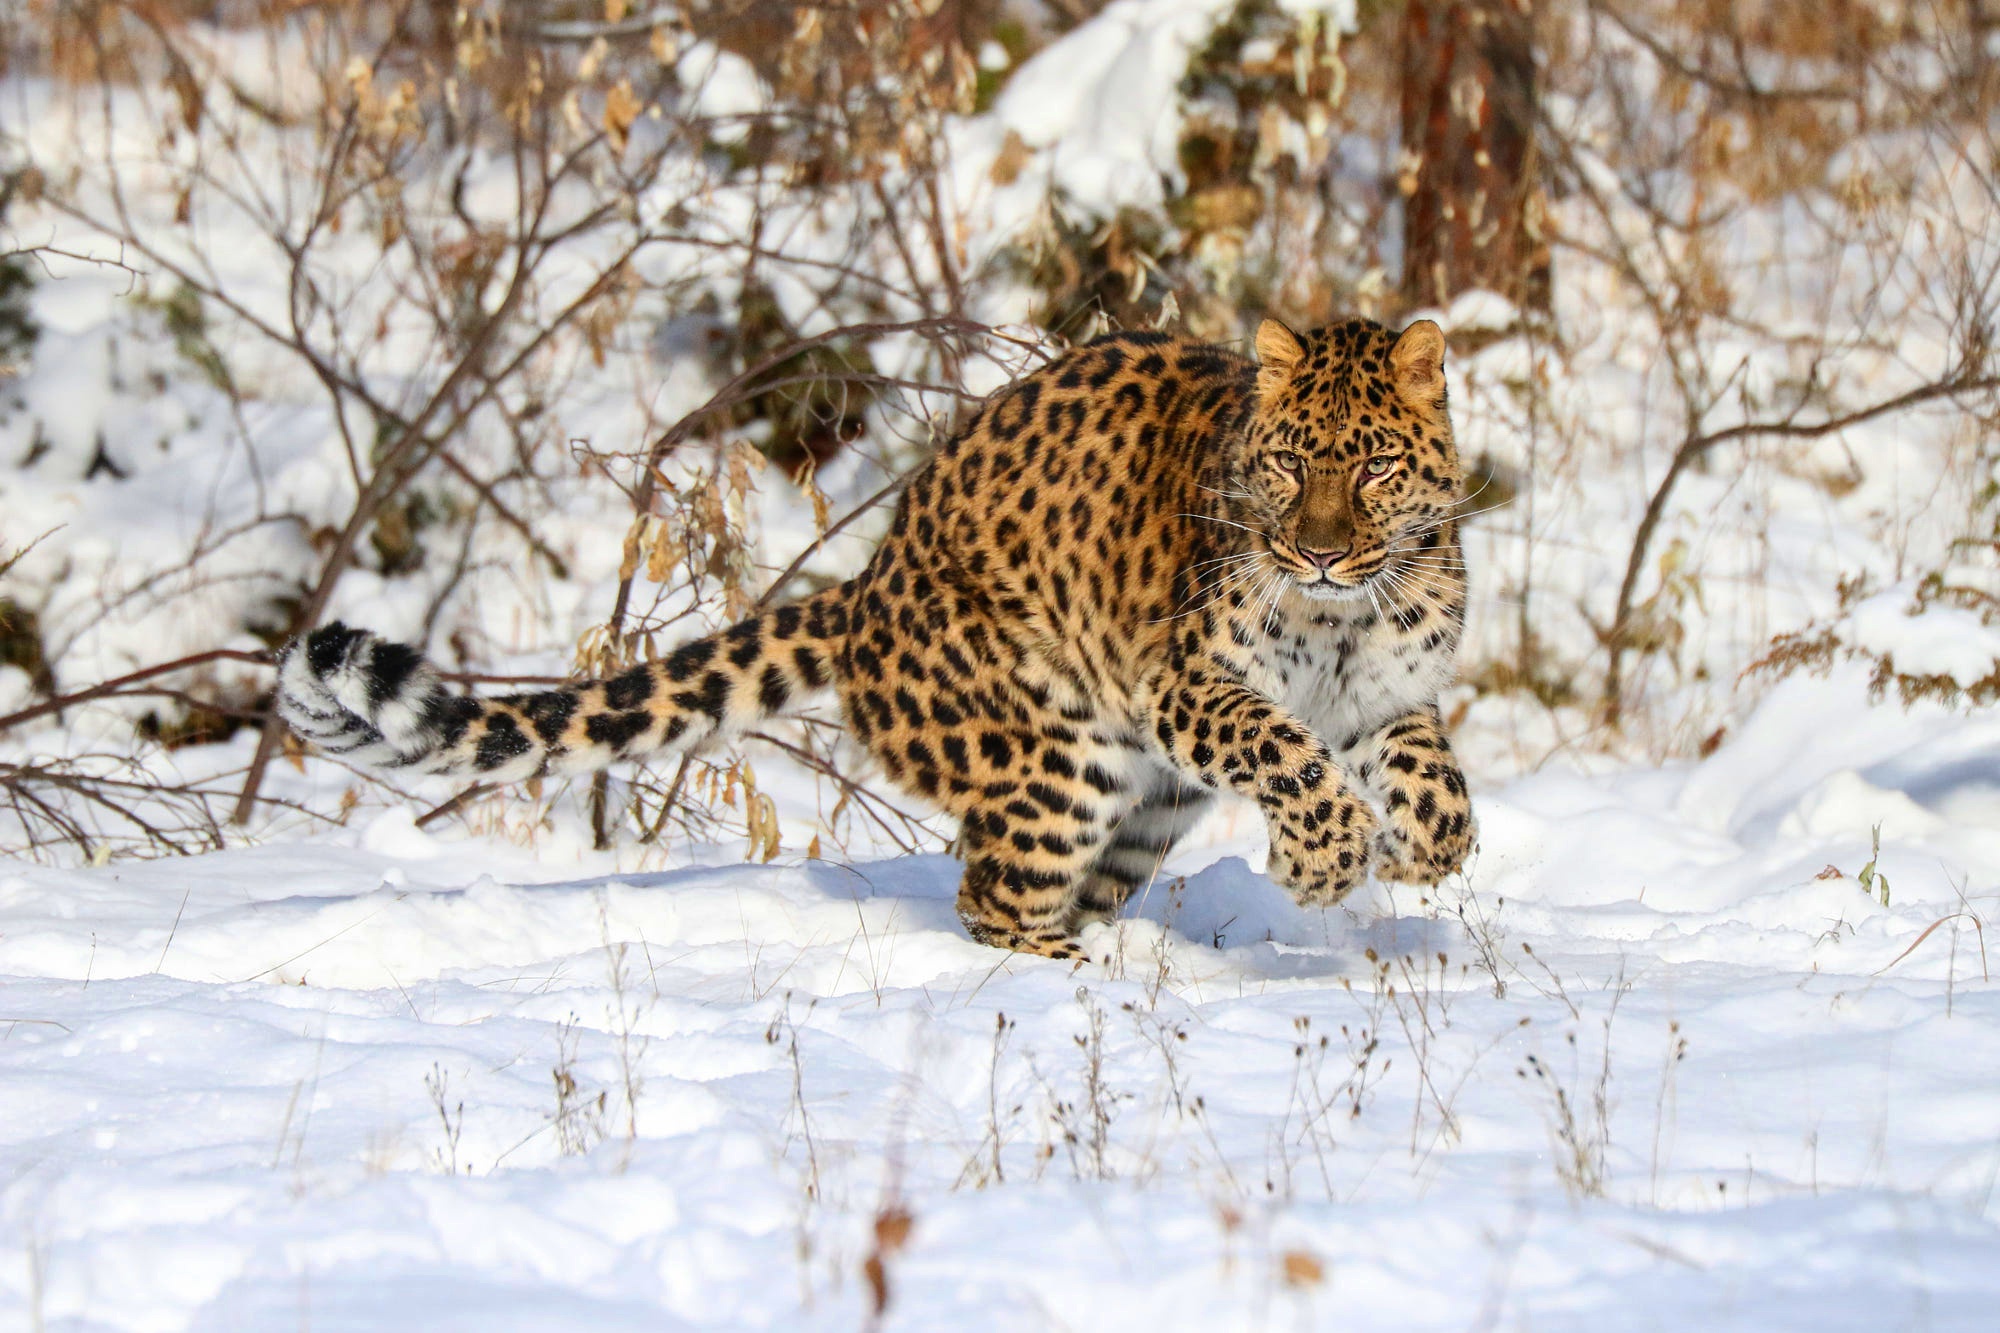 Скачать обои бесплатно Животные, Зима, Снег, Леопард, Кошки картинка на рабочий стол ПК